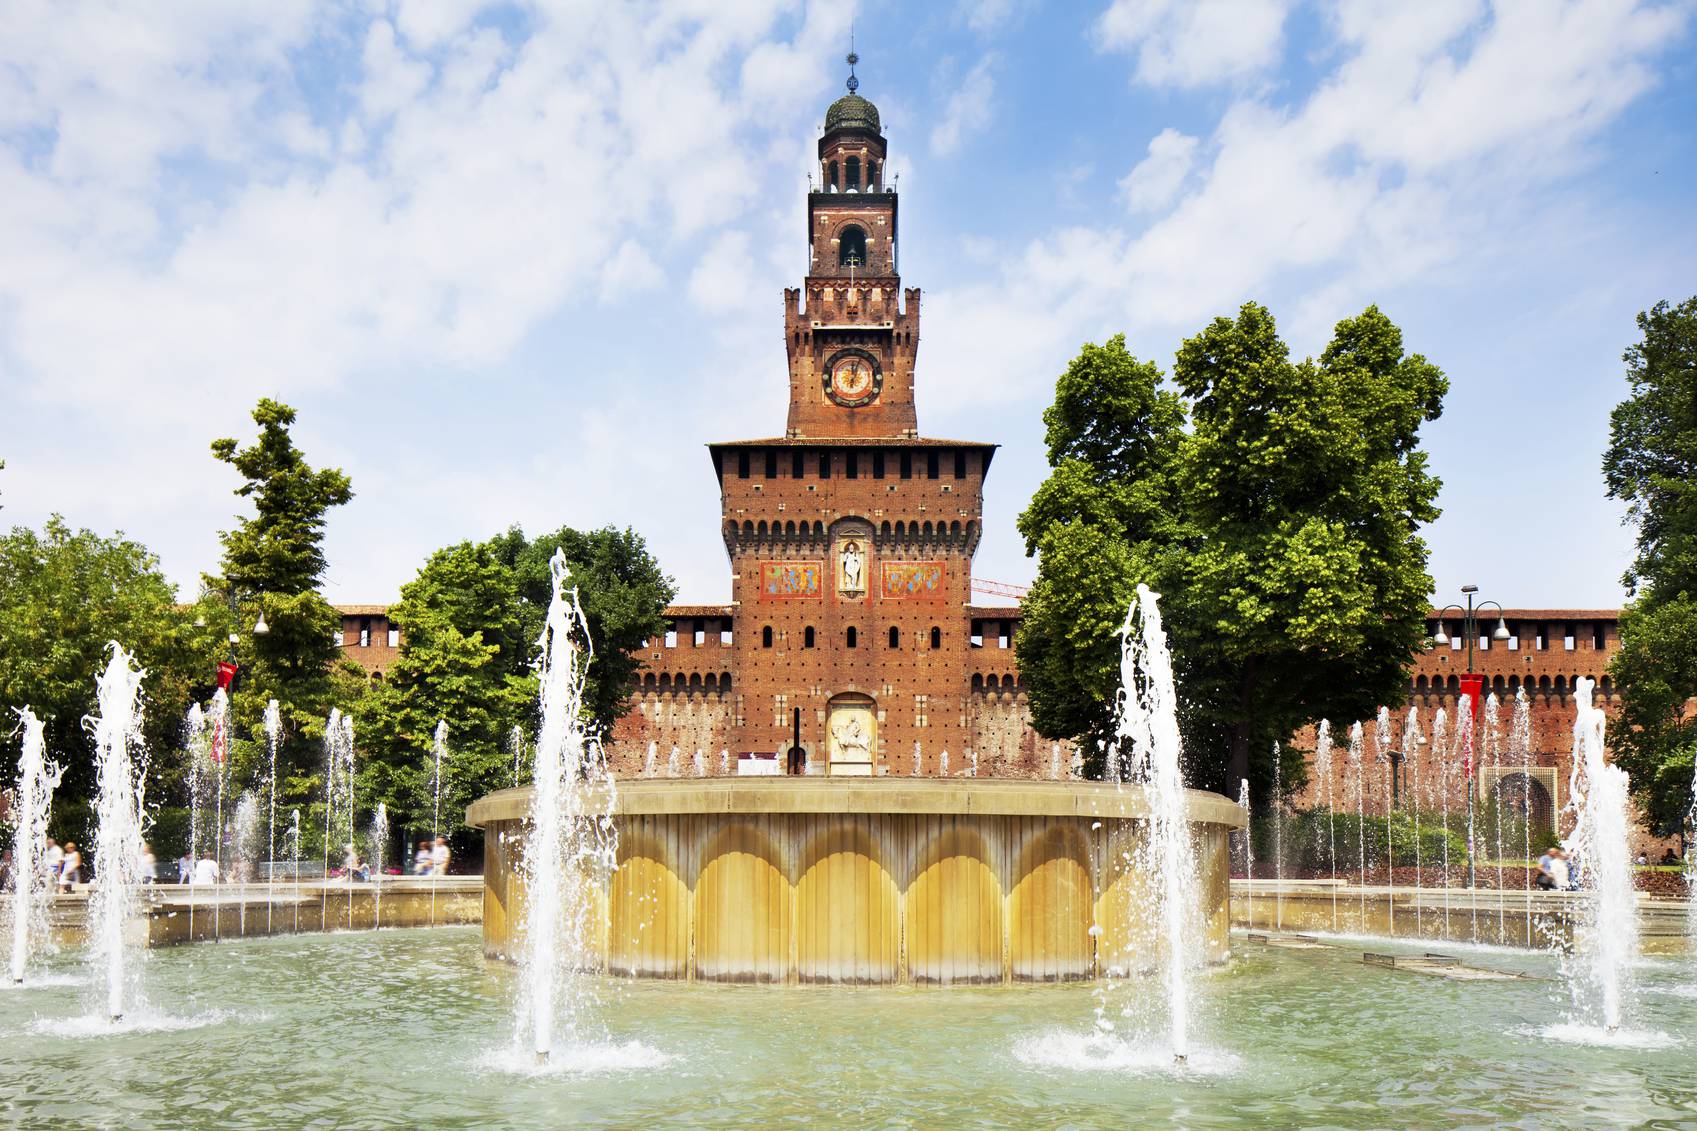 "Castello Sforzesco in Milan, Italy"